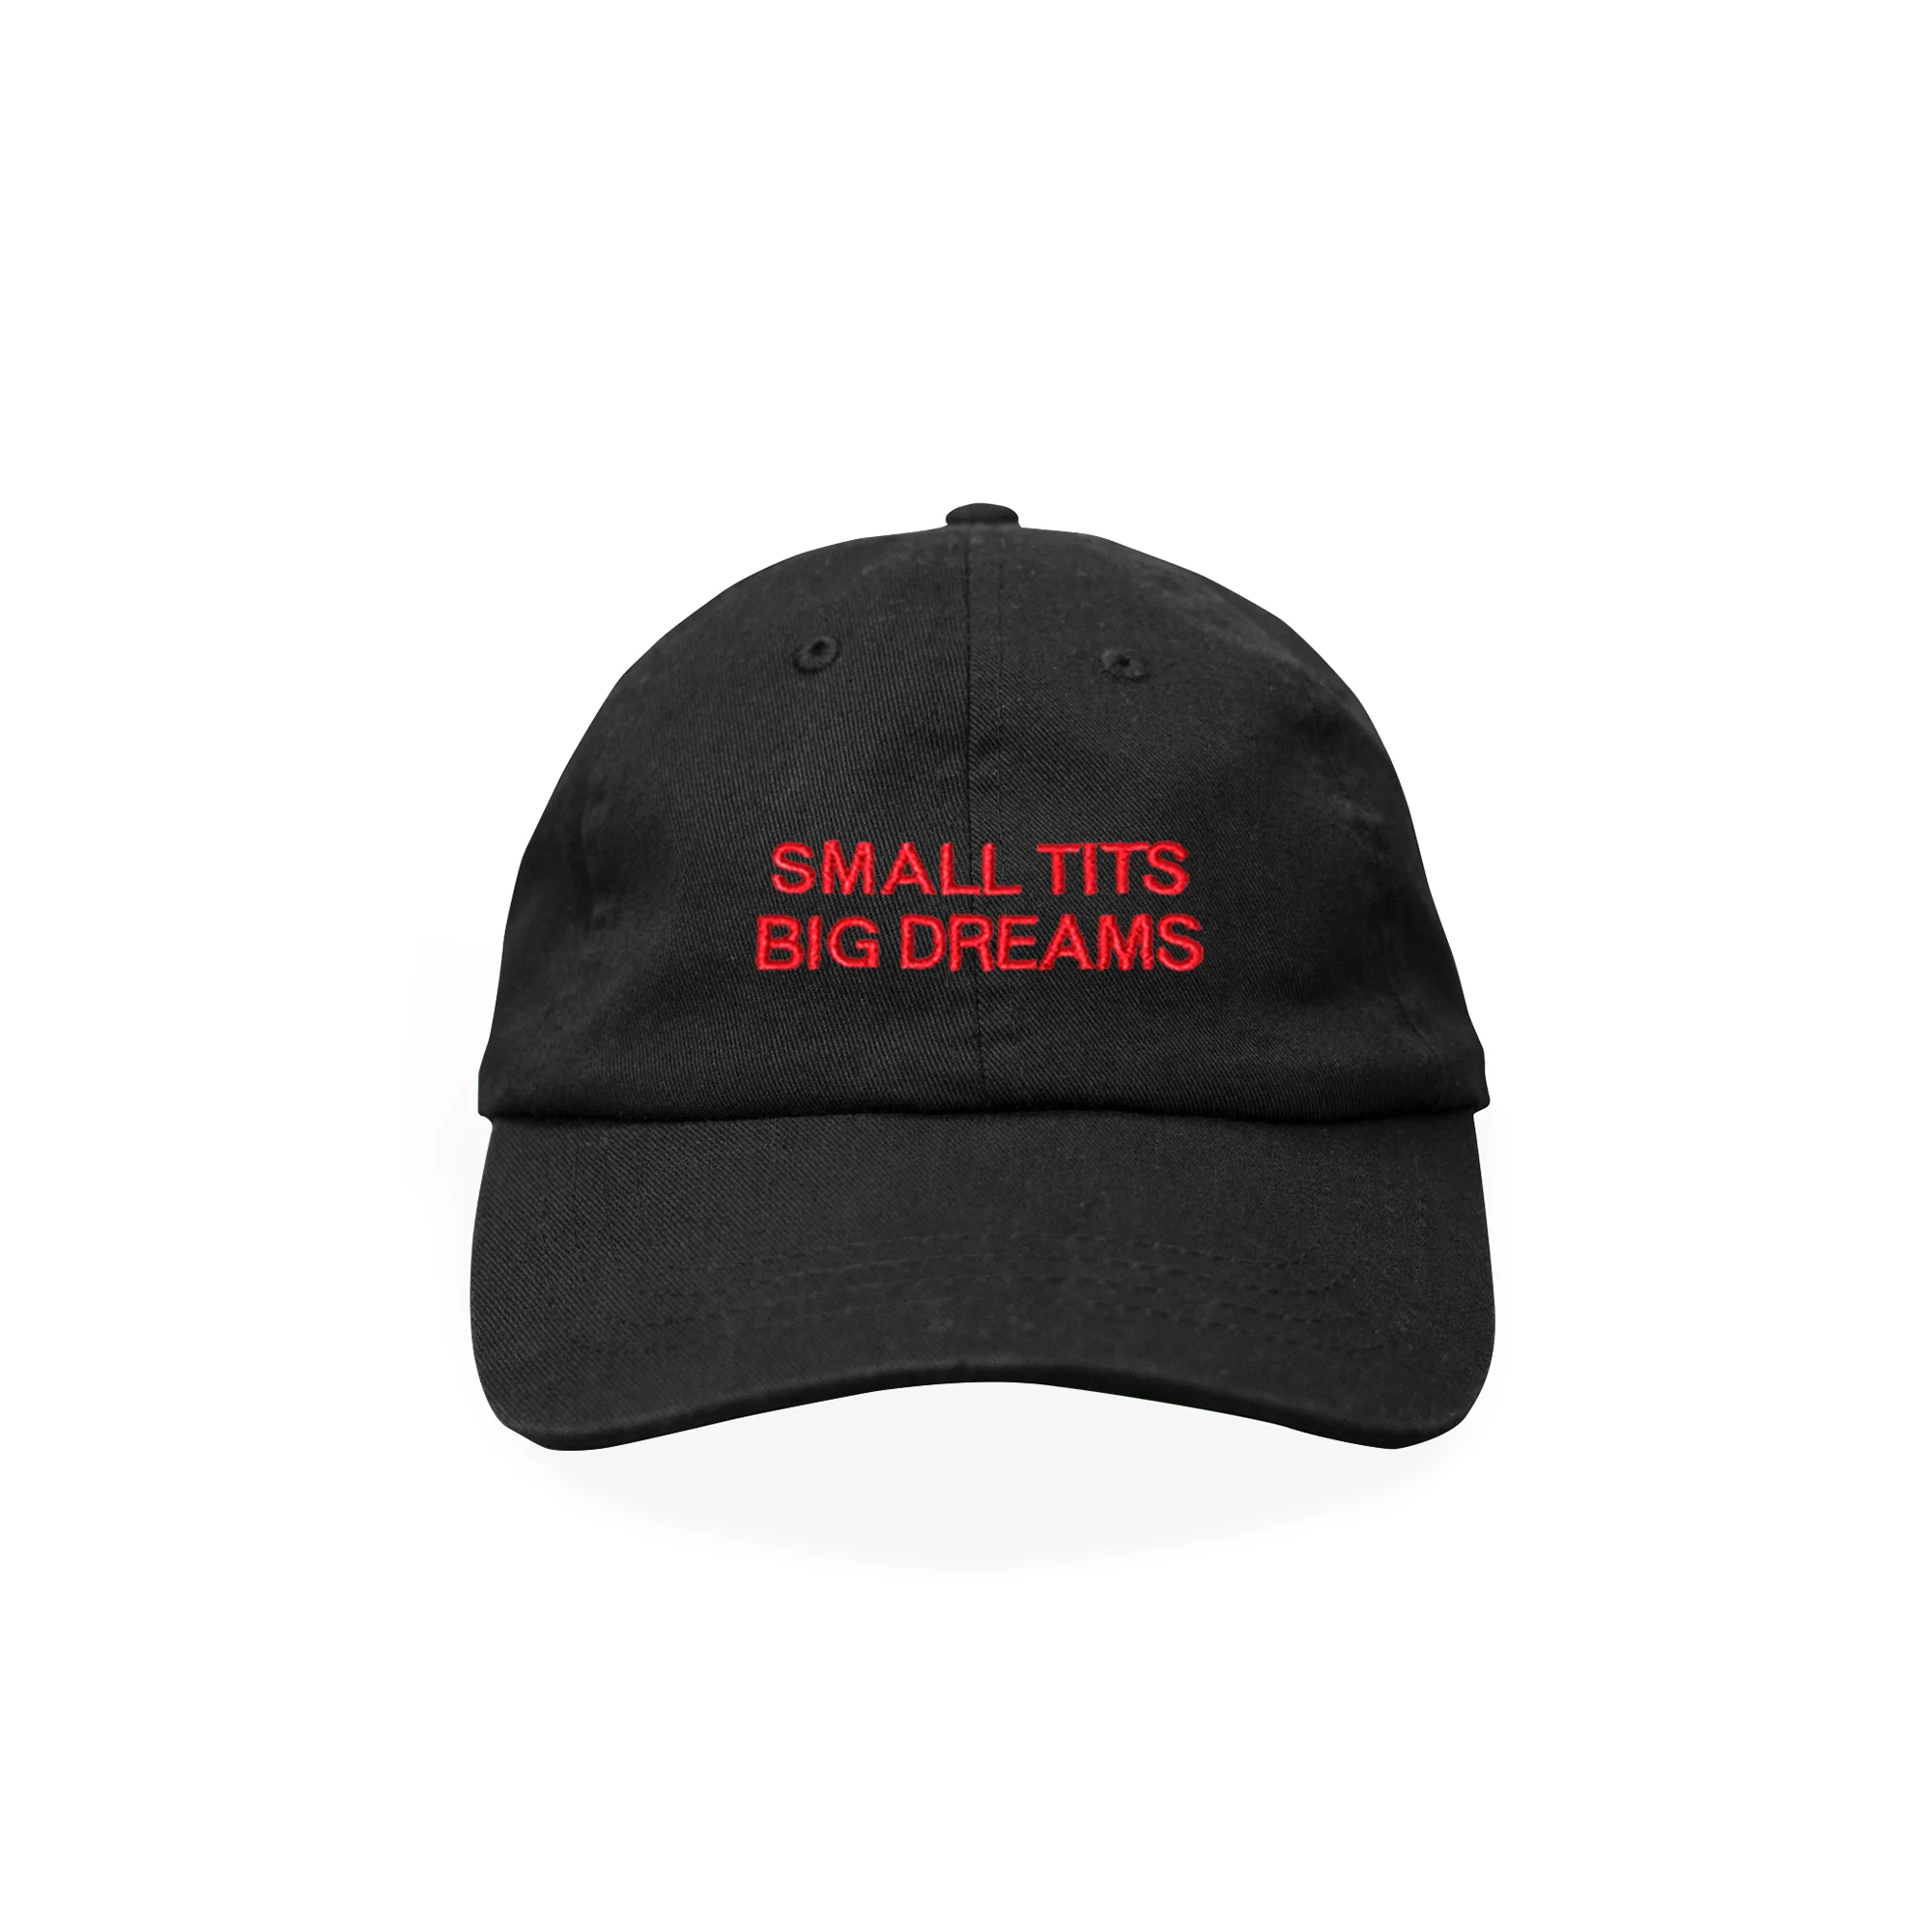 Small Tits Big Dreams - Cap N°1